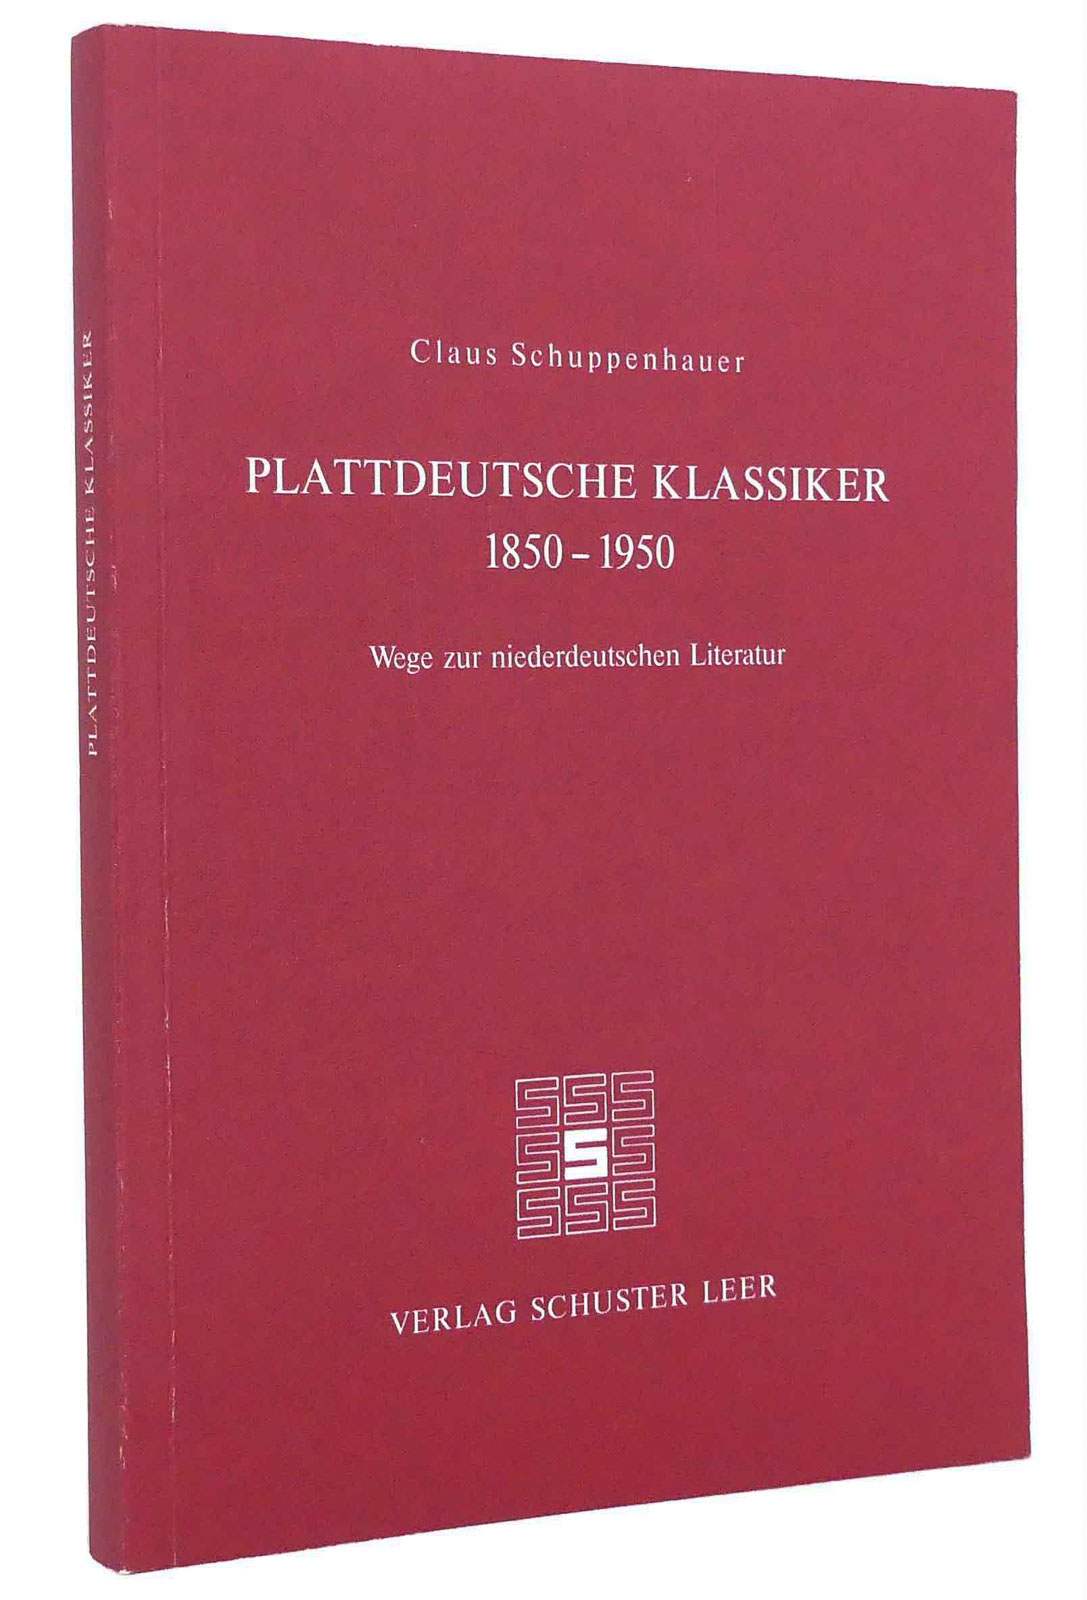 Plattdeutsche Klassiker 1850-1950 : Wege zur niederdeutschen Literatur : (Reihe: Schriften des Instituts für Niederdeutsche Sprache, Nr. 7) - Schuppenhauer, Claus